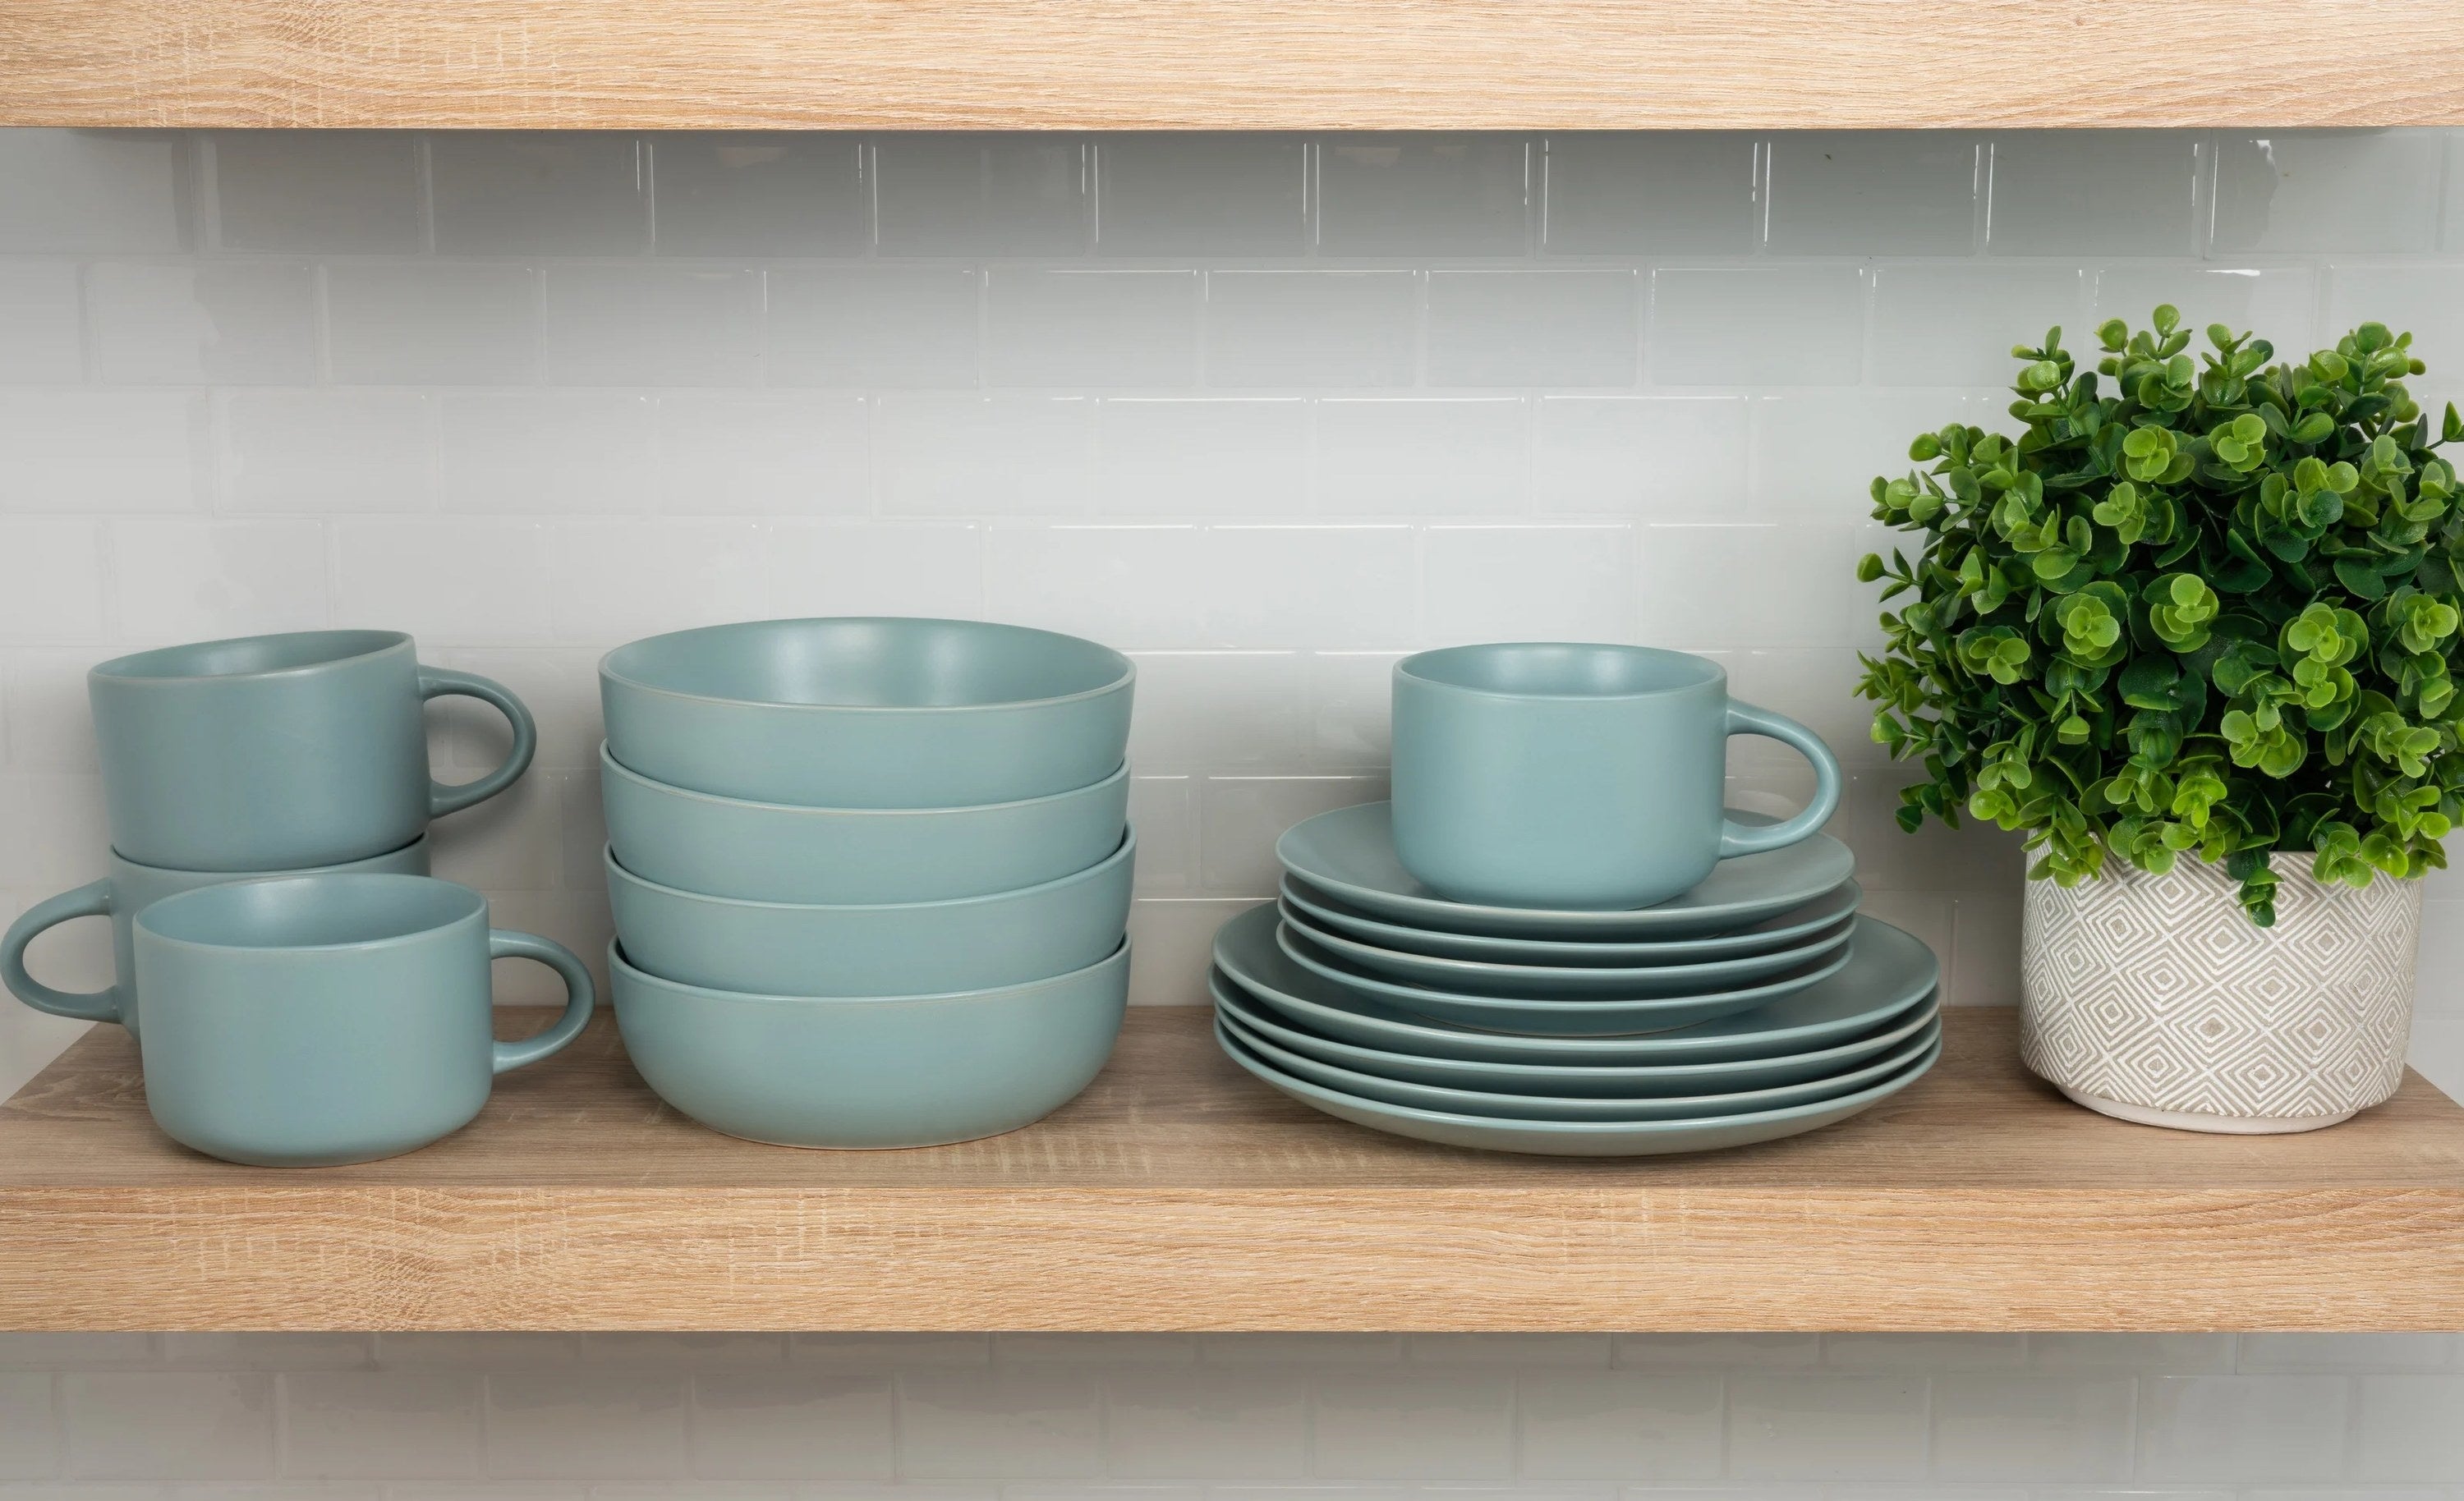 blue dinnerware set on a wooden shelf